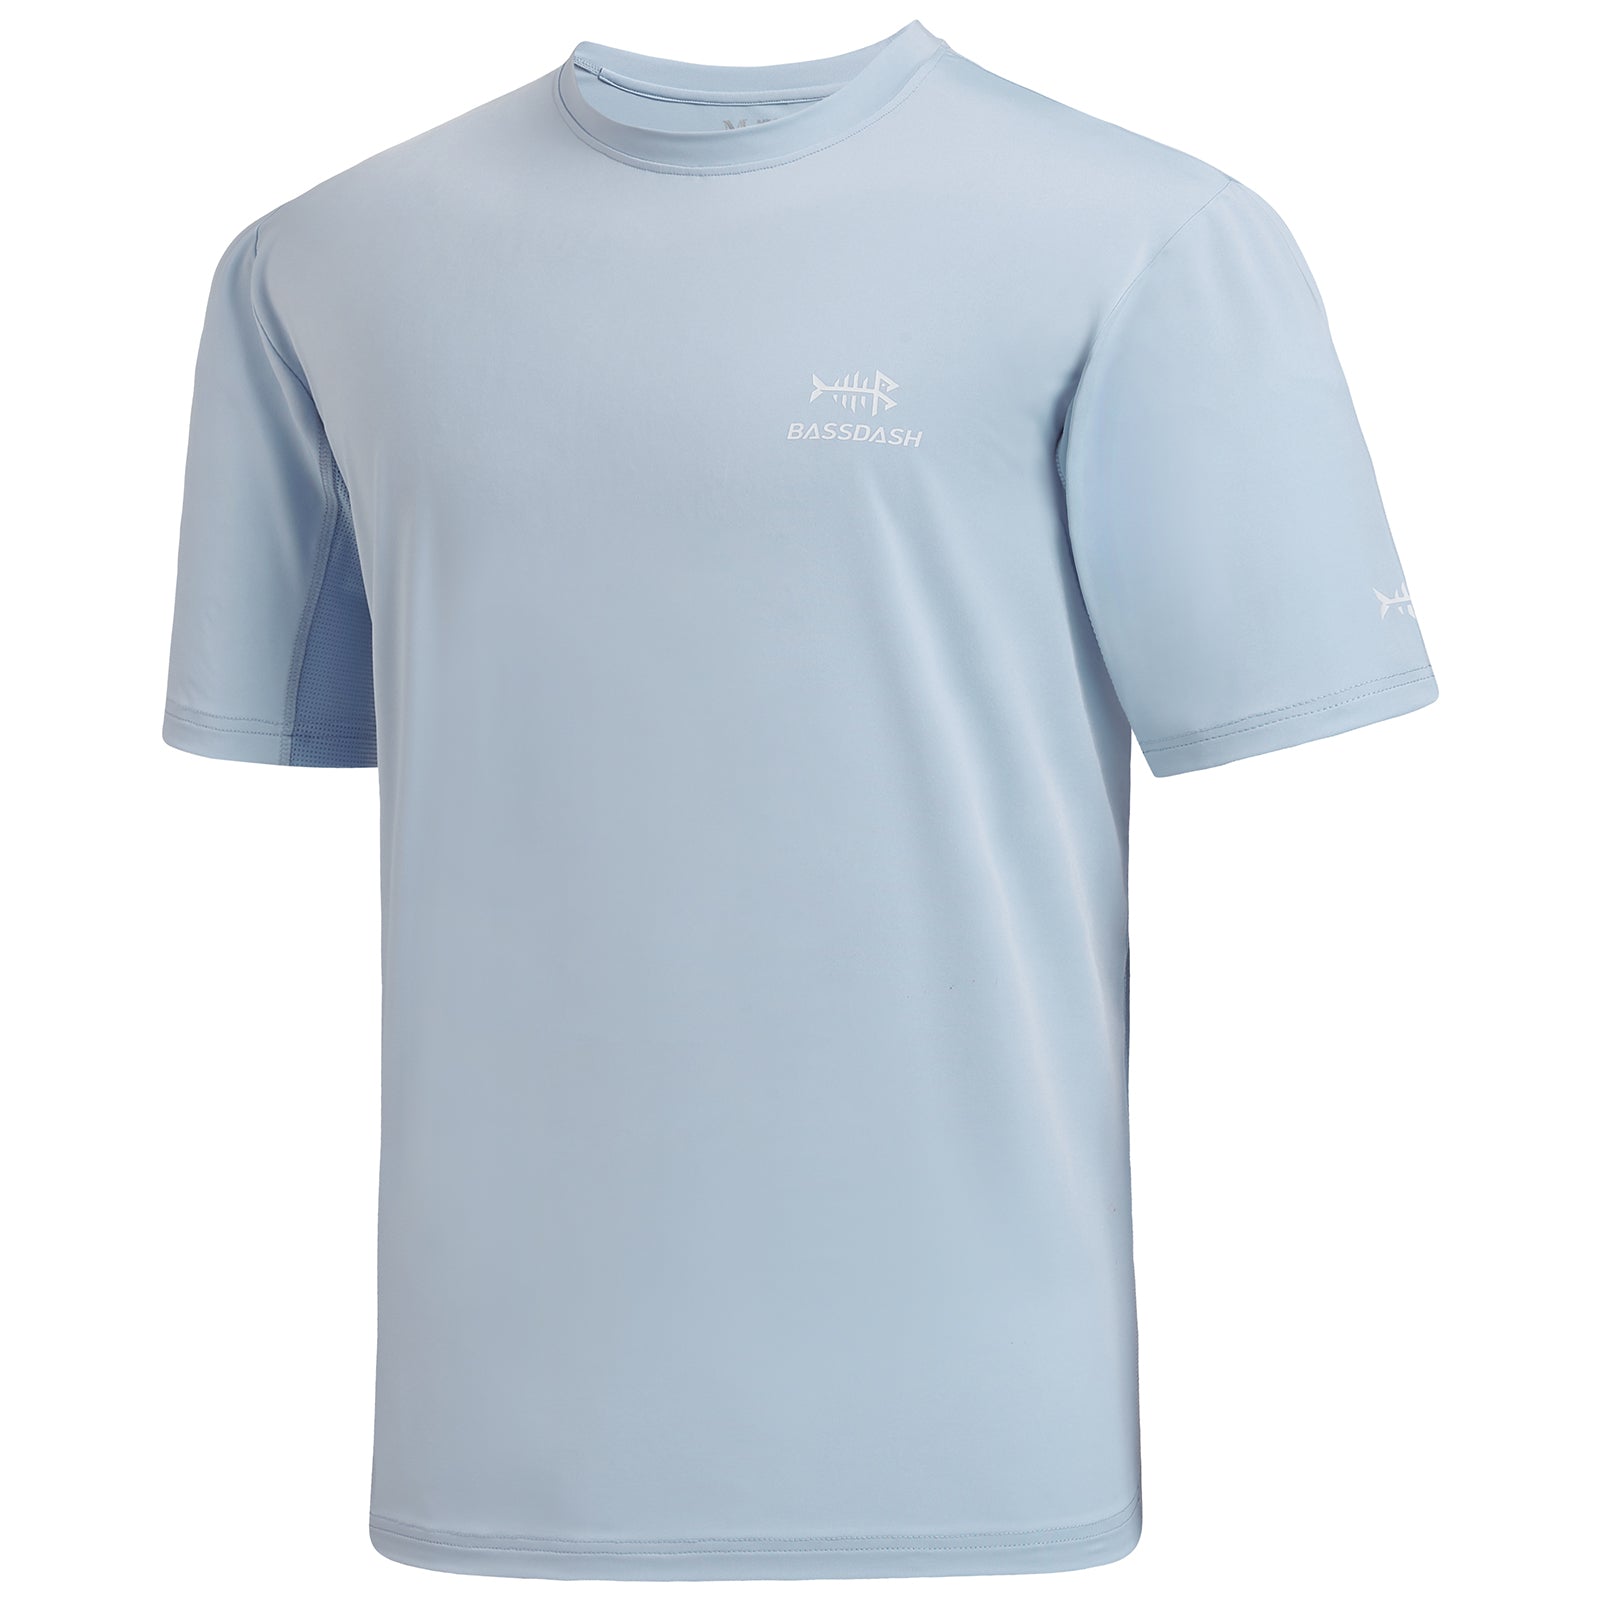 Fishing T-shirt Men Short Sleeve Shirts UV Sun Protection Shirt UPF 50+  Running Golf Fishing Clothing Quick Dry Camisa De Pesca